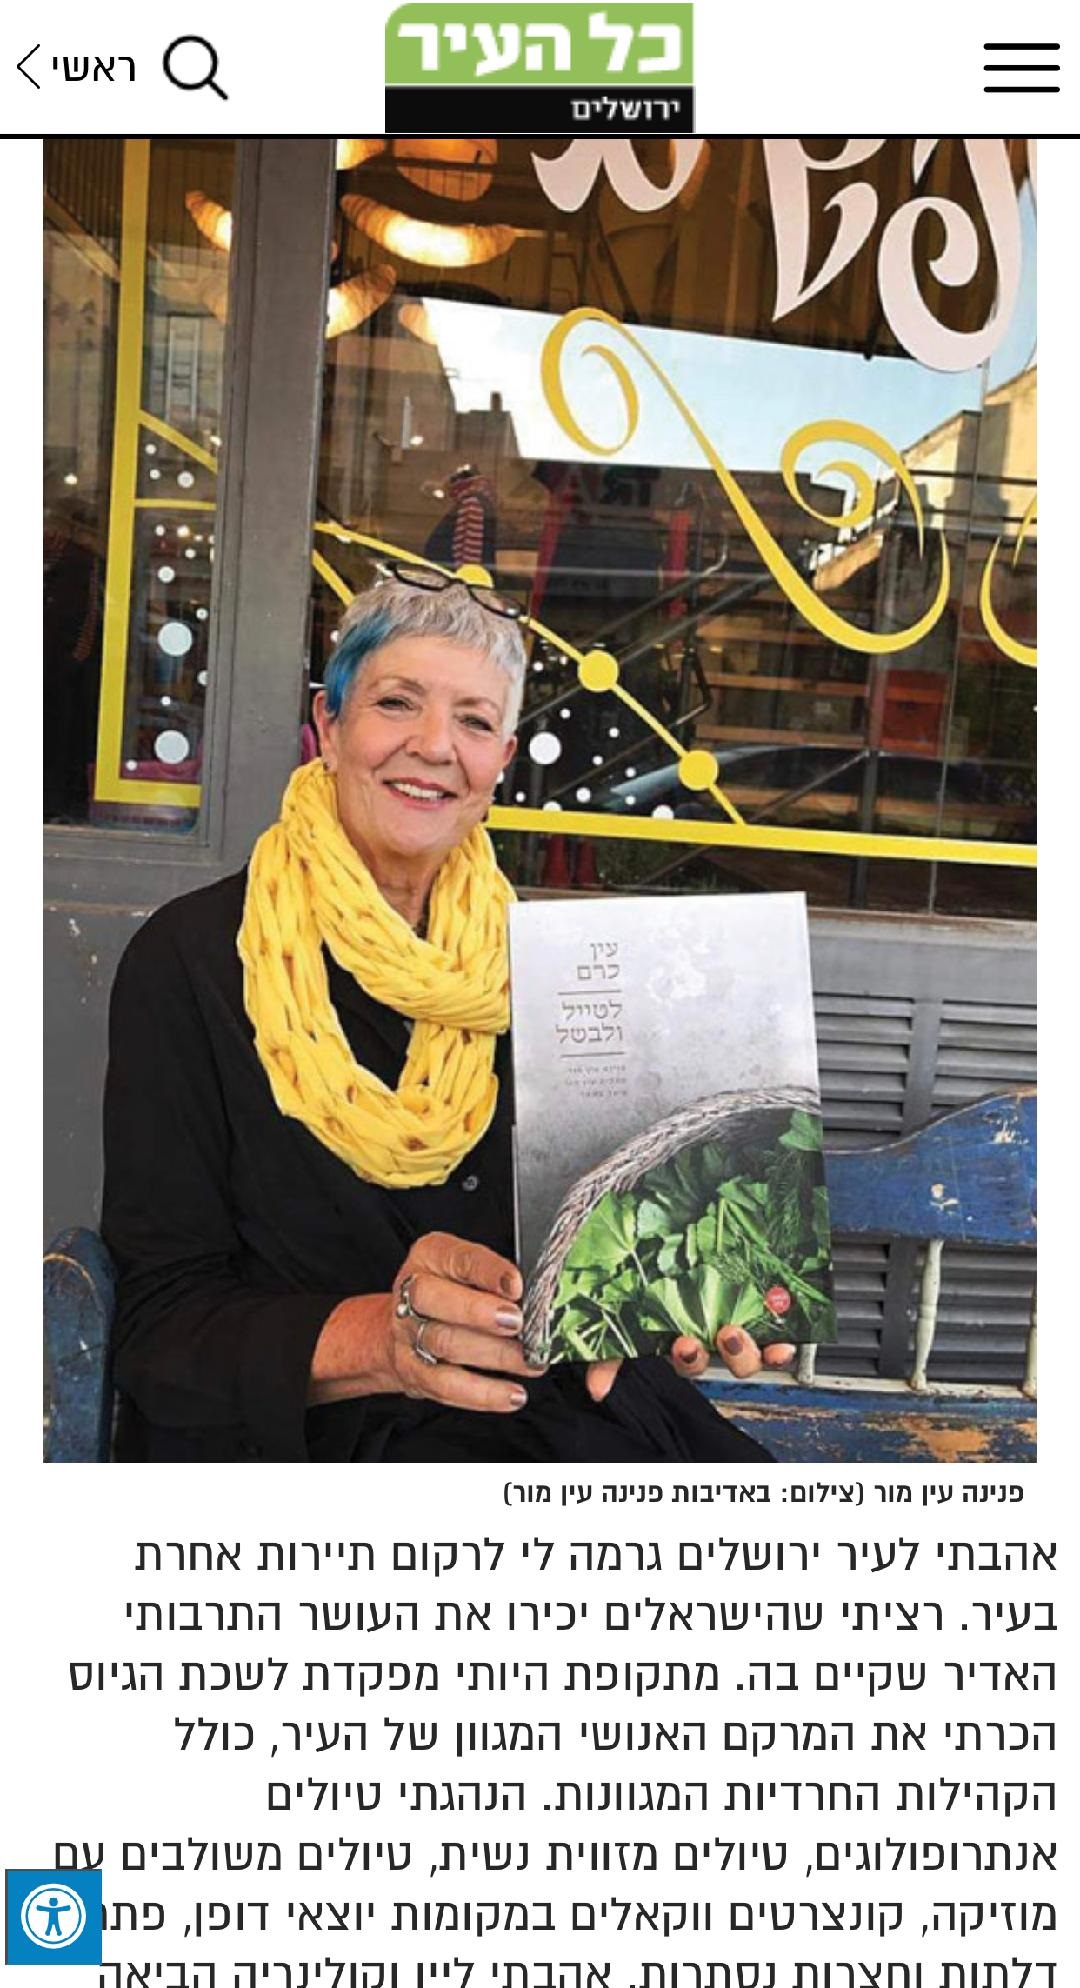 פנינה עין מור מייסדת החברה על סיורים לקבוצות בירושלים